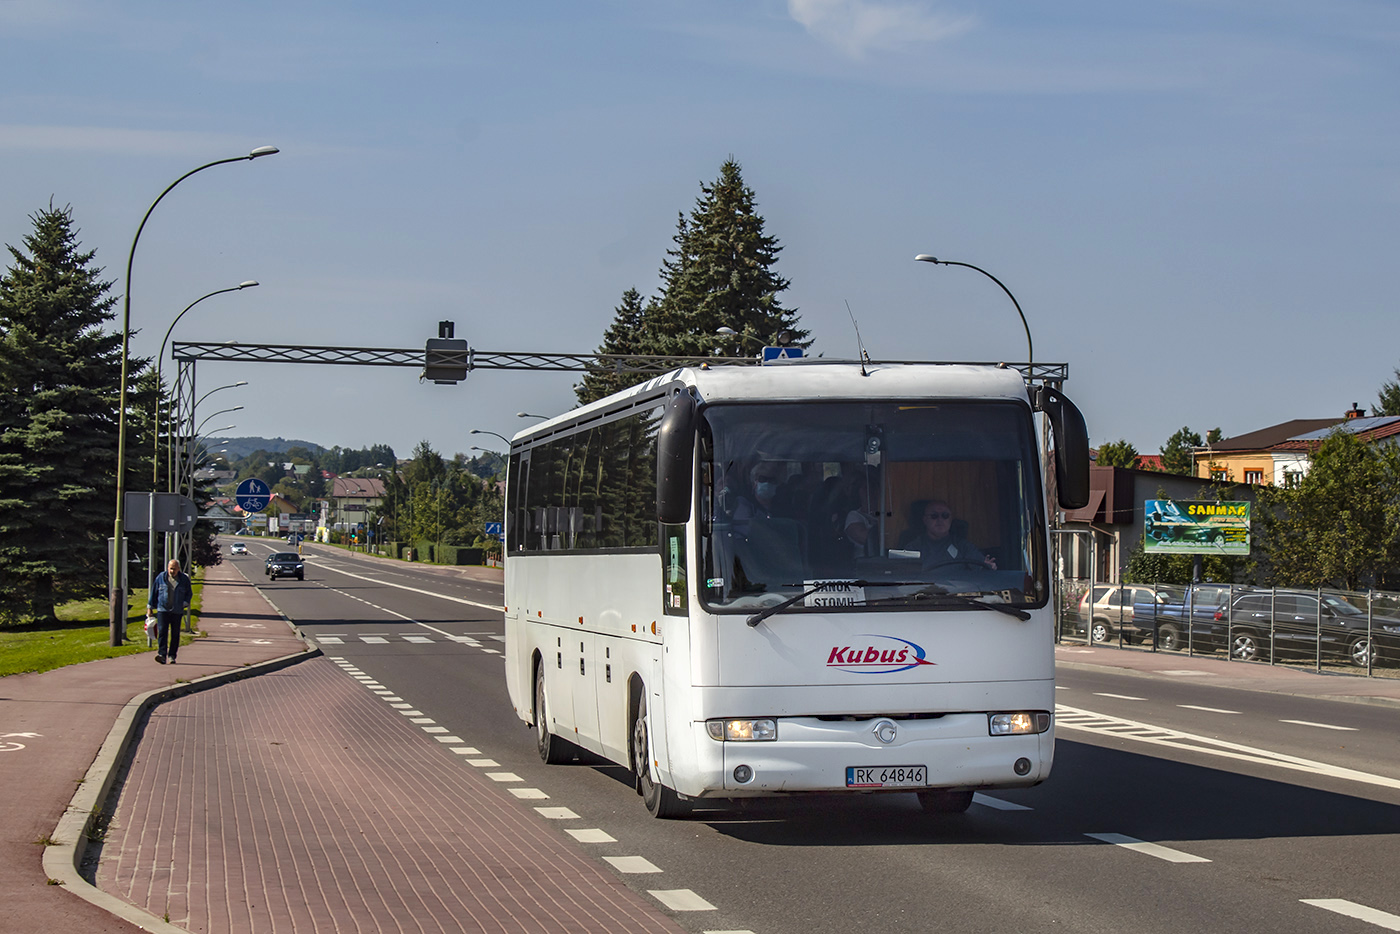 Krosno, Irisbus Iliade # RK 64846